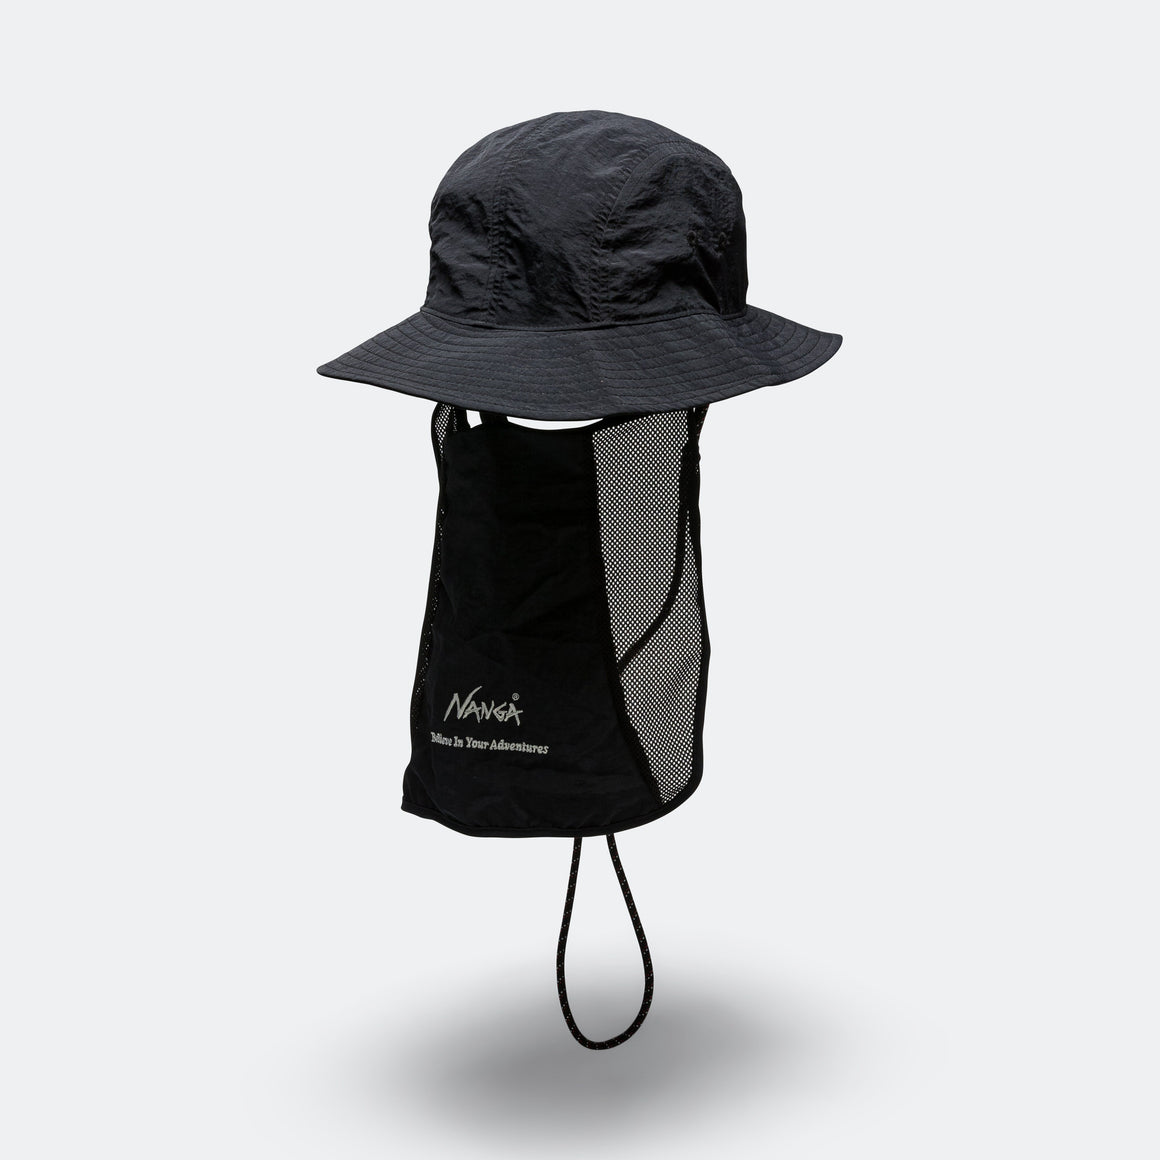 Nanga - Nylon Tusser Sunshade Hat - Black - UP THERE